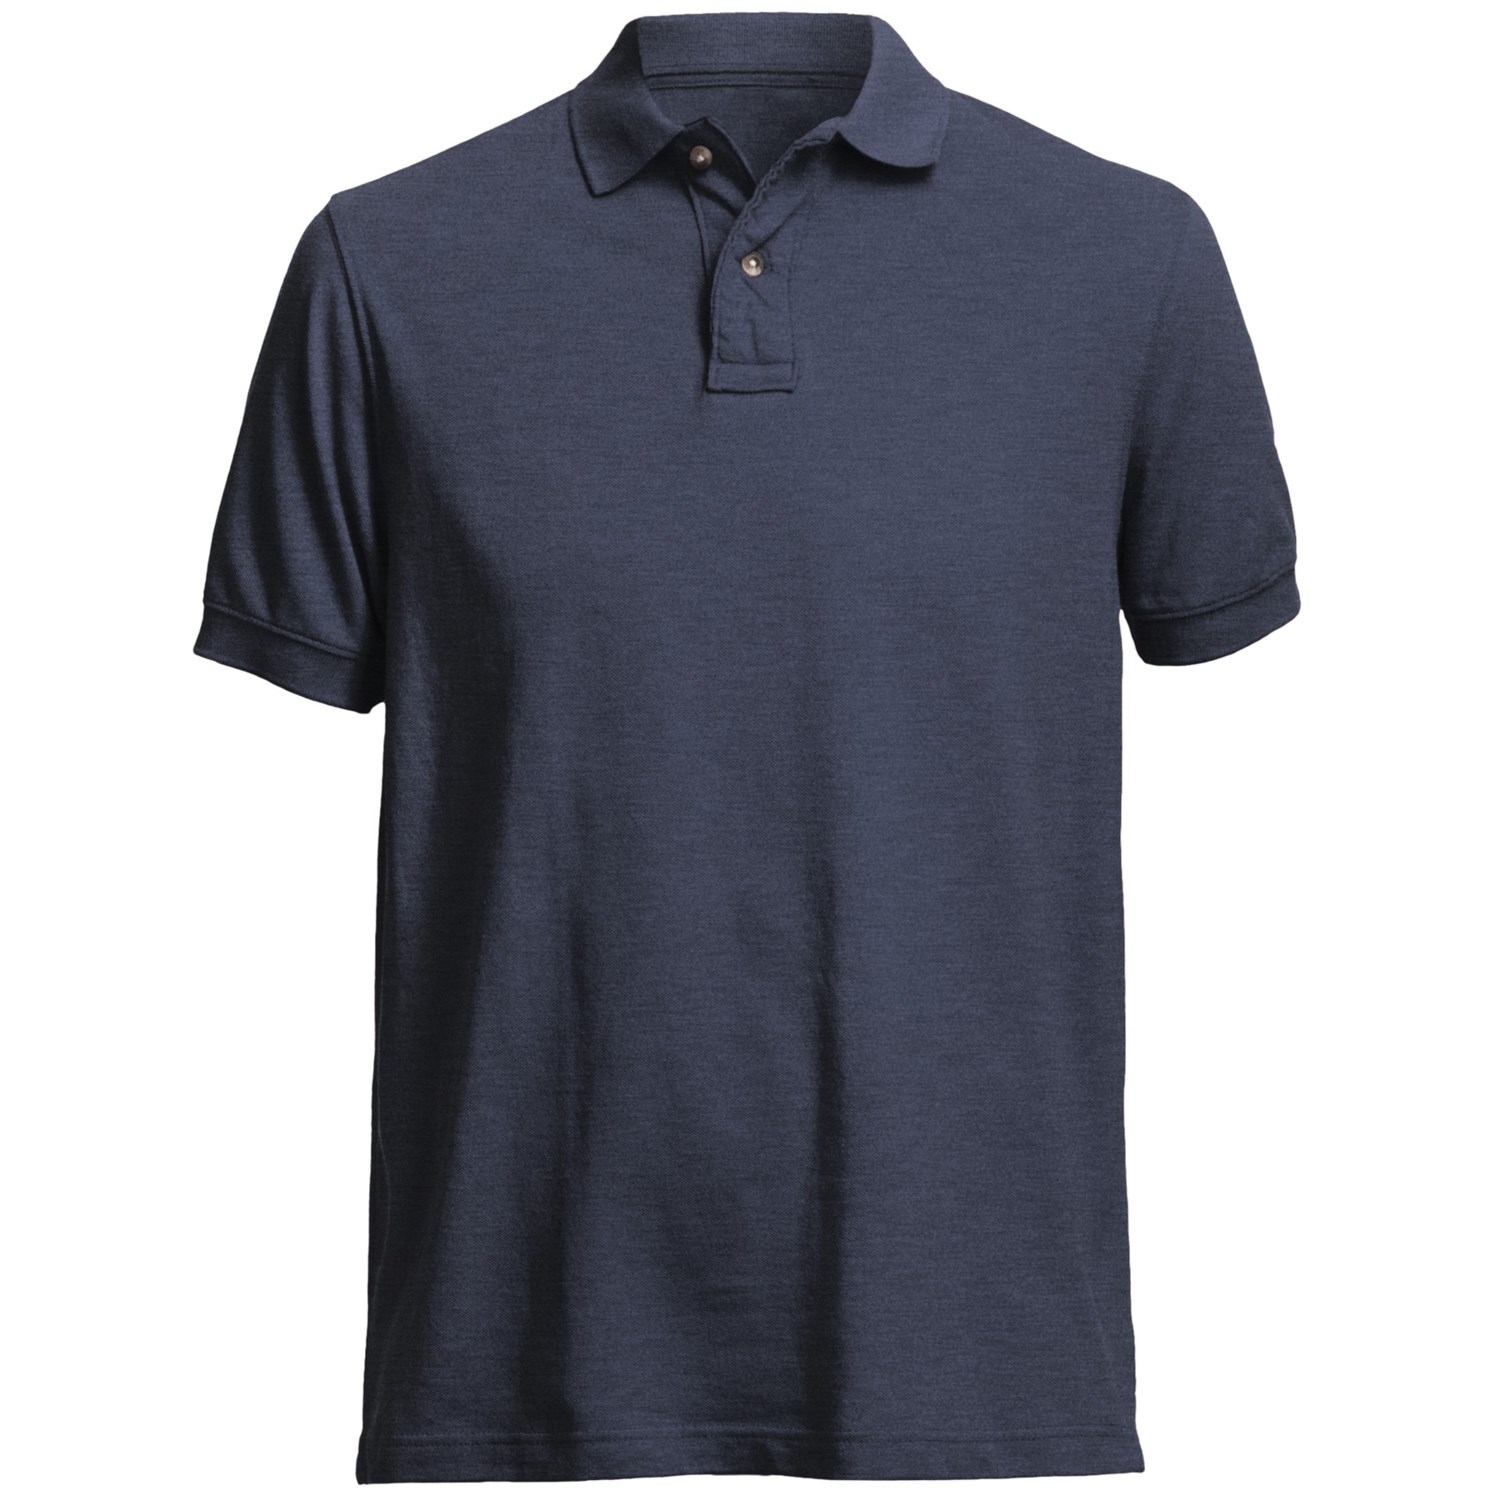 Pique Polo Shirt (For Men) 5619A - Save 79%